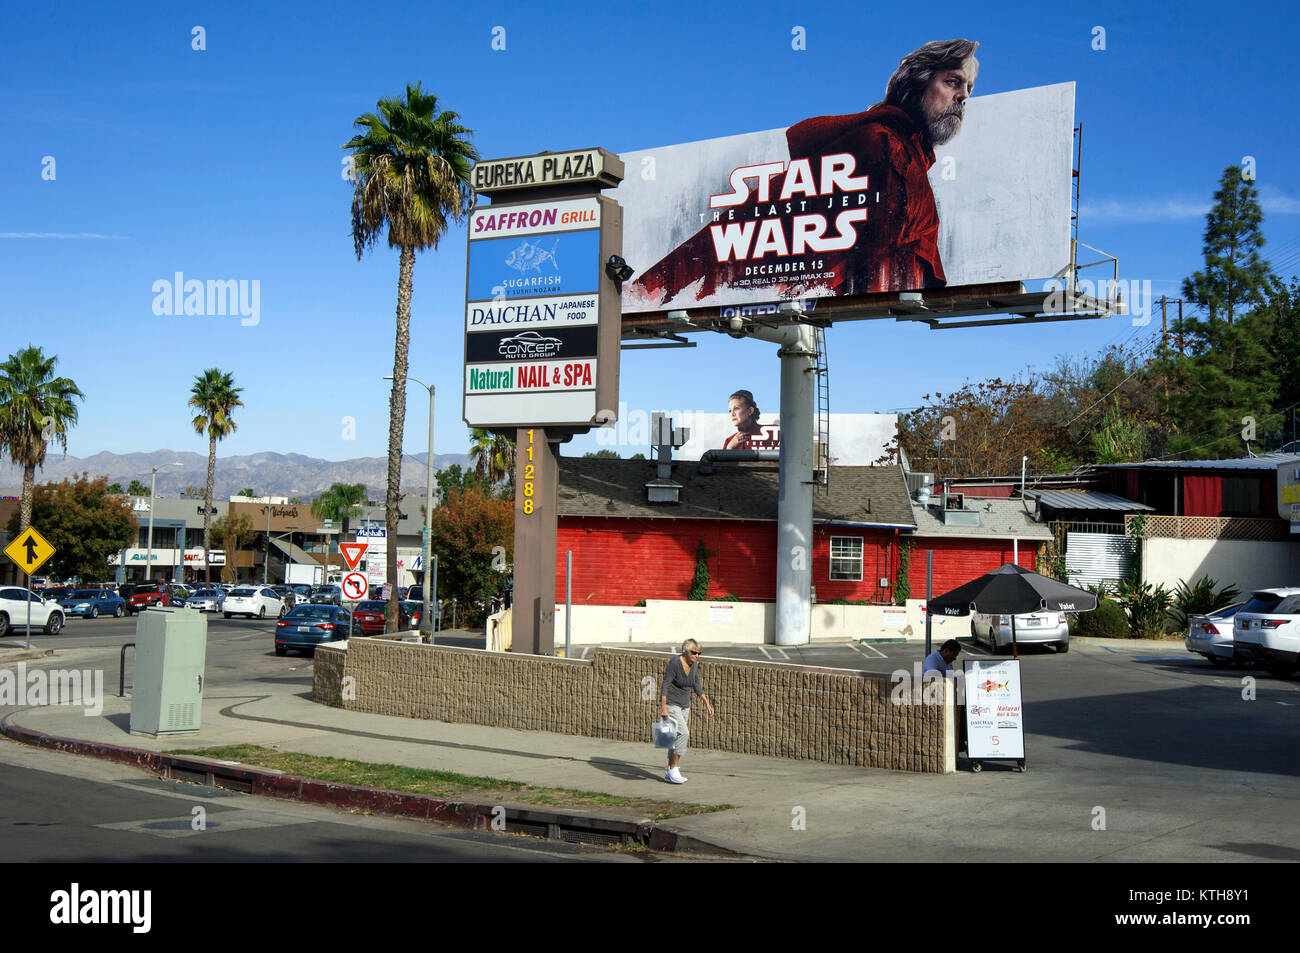 Les panneaux publicitaires avec Mark Hammil et Carrie Fisher pour Star Wars Jedi Le dernier film à Los Angeles, CA Banque D'Images